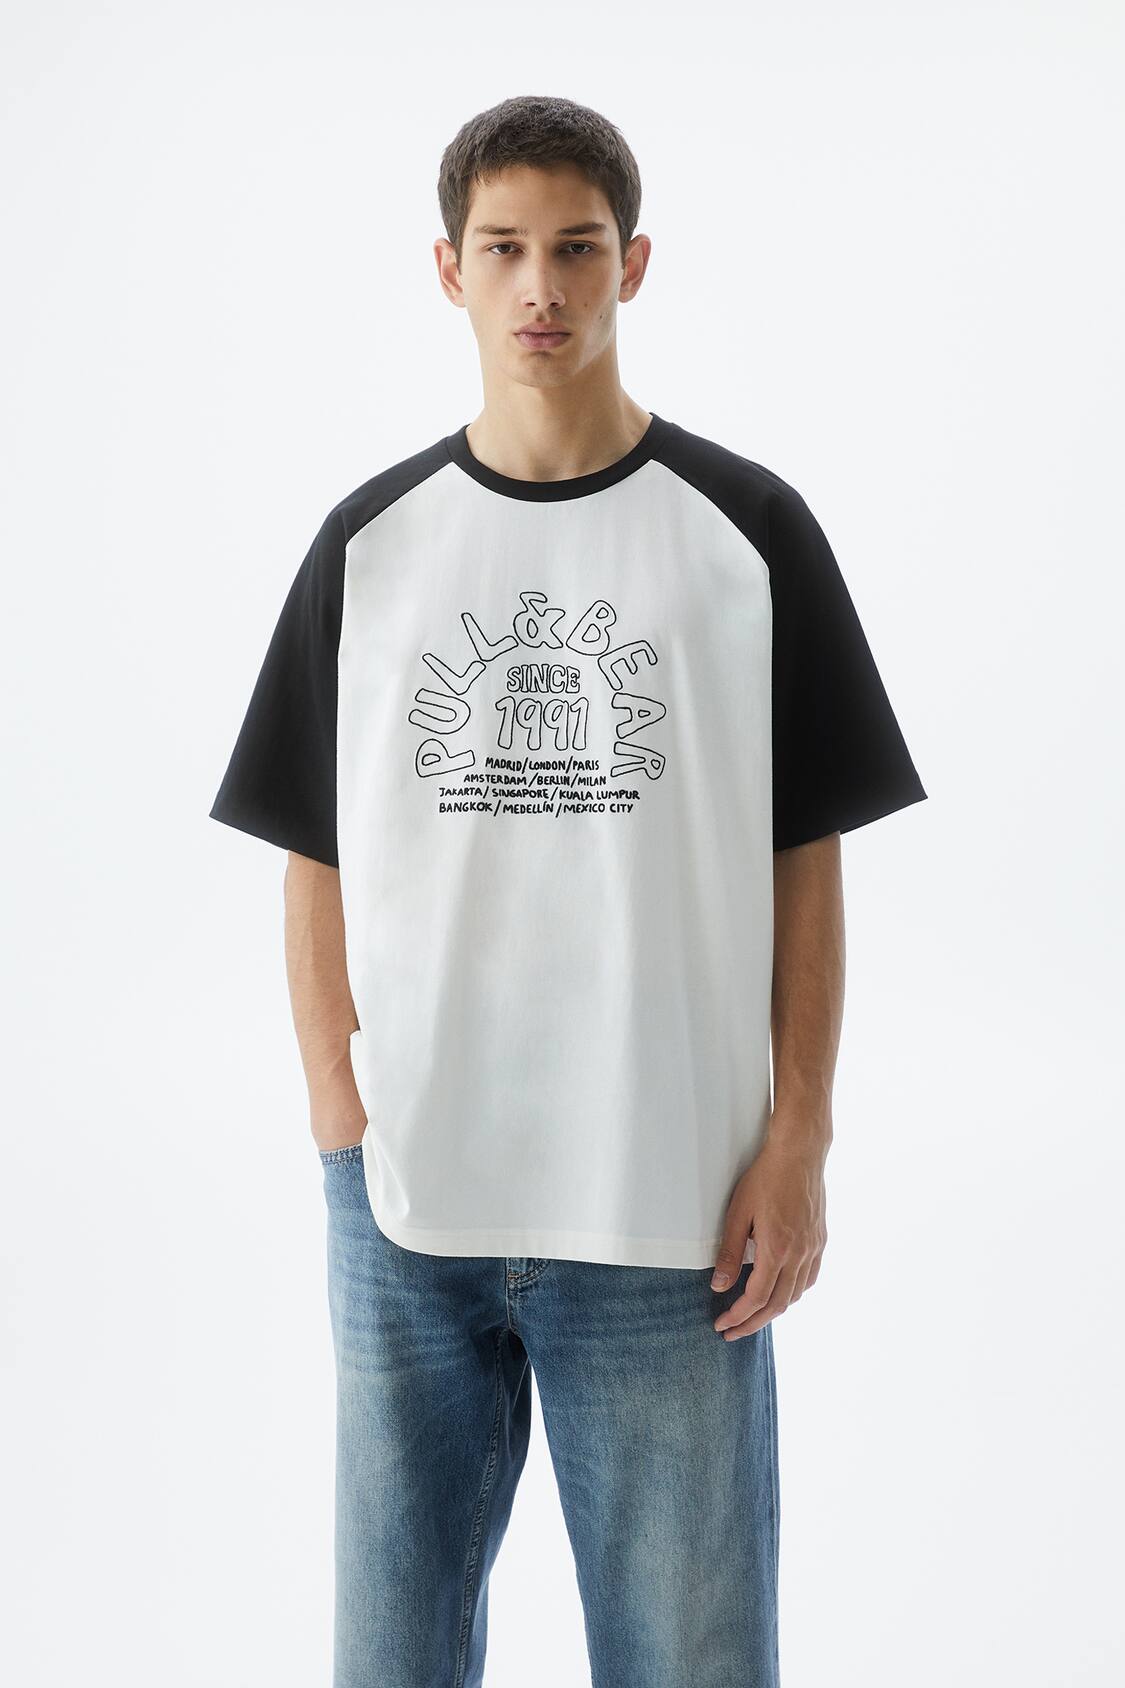 Camiseta manga larga algodón · Blanco Roto, Negro · Circular